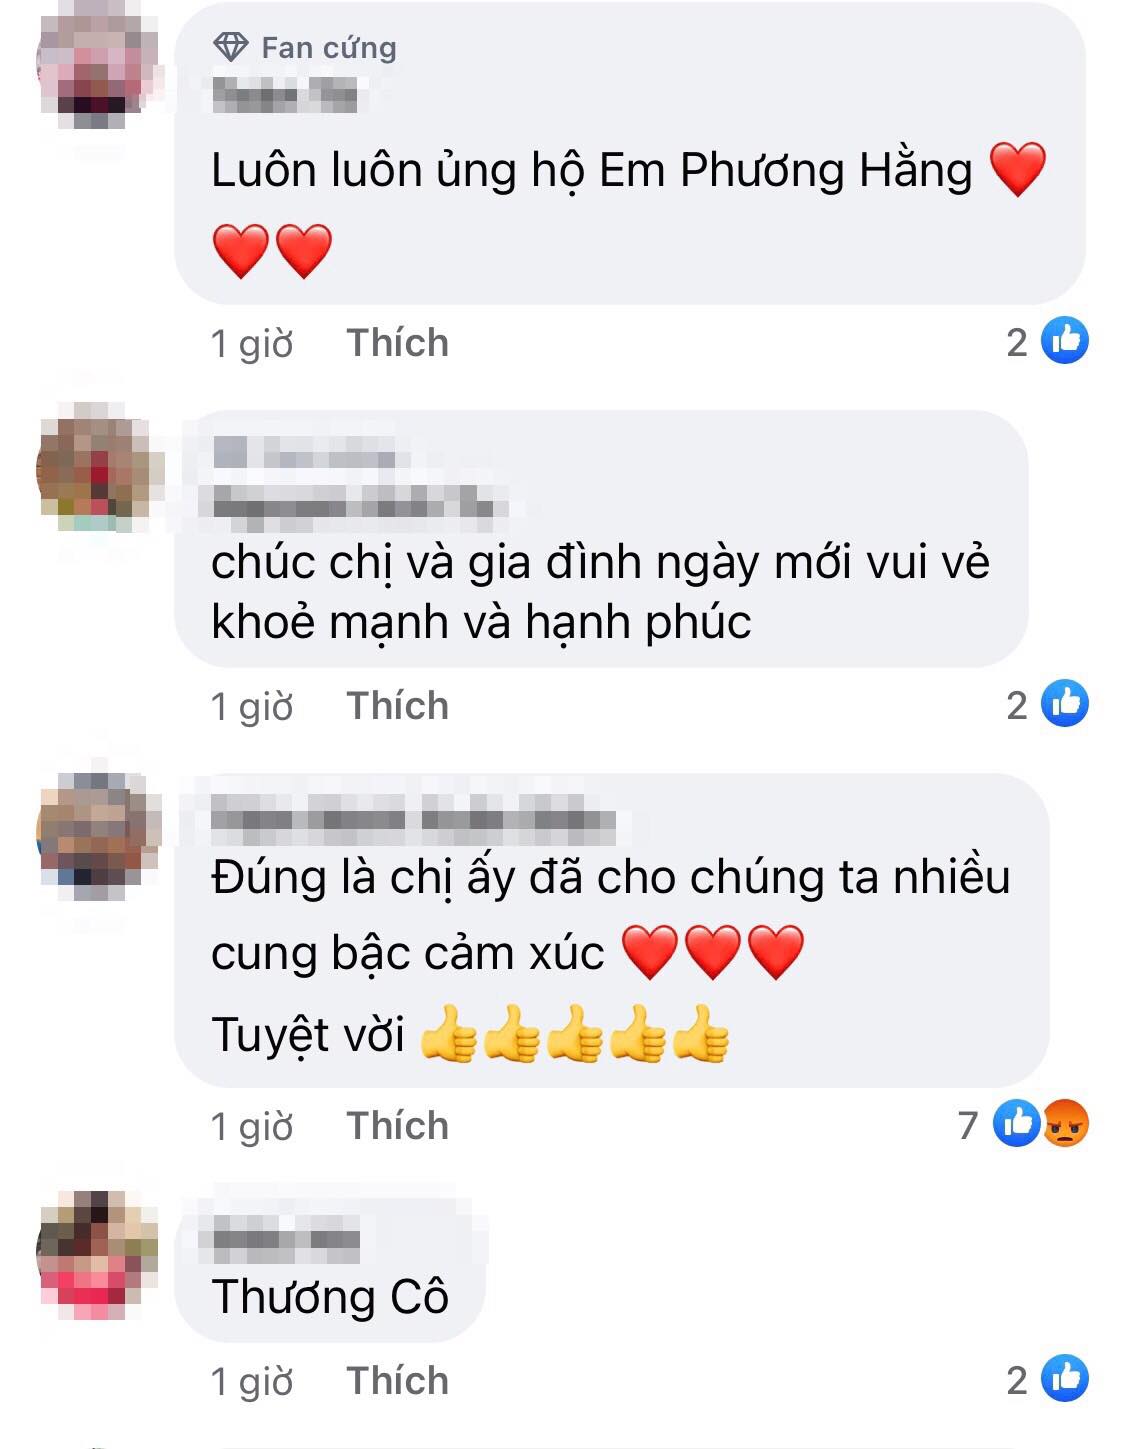 Nguyen Phuong Hang 3